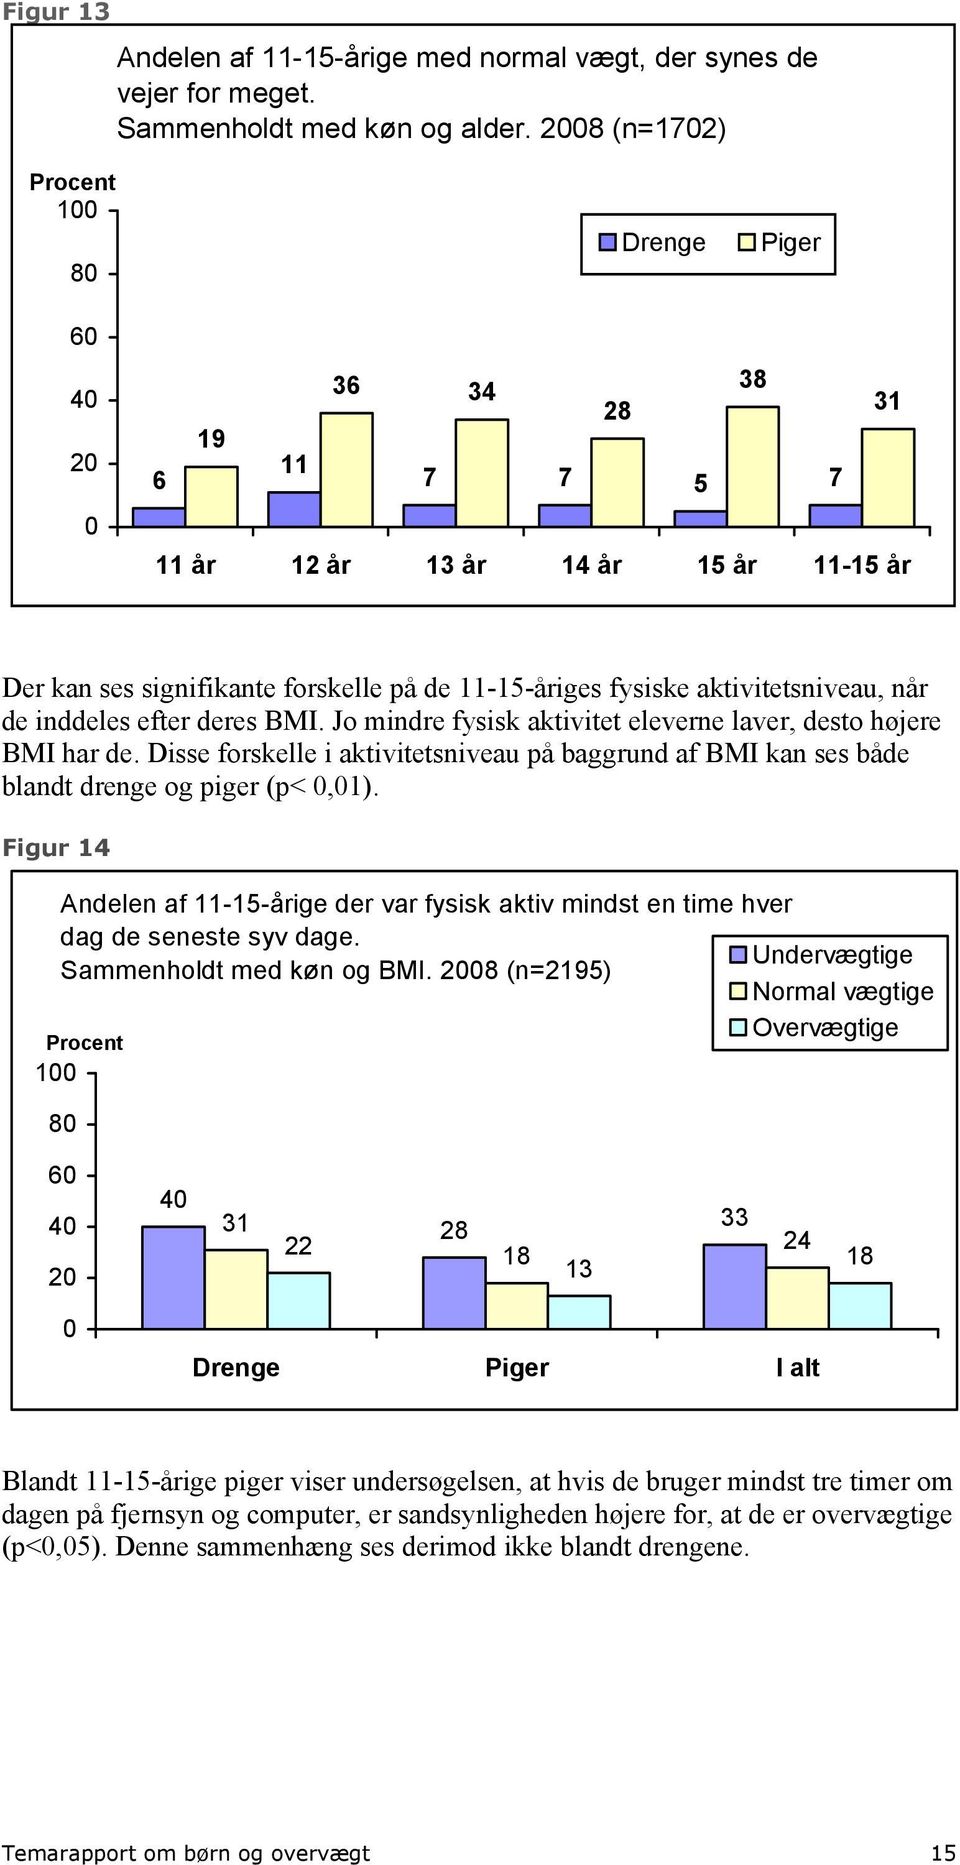 Jo mindre fysisk aktivitet eleverne laver, desto højere BMI har de. Disse forskelle i aktivitetsniveau på baggrund af BMI kan ses både blandt drenge og piger (p<,1).